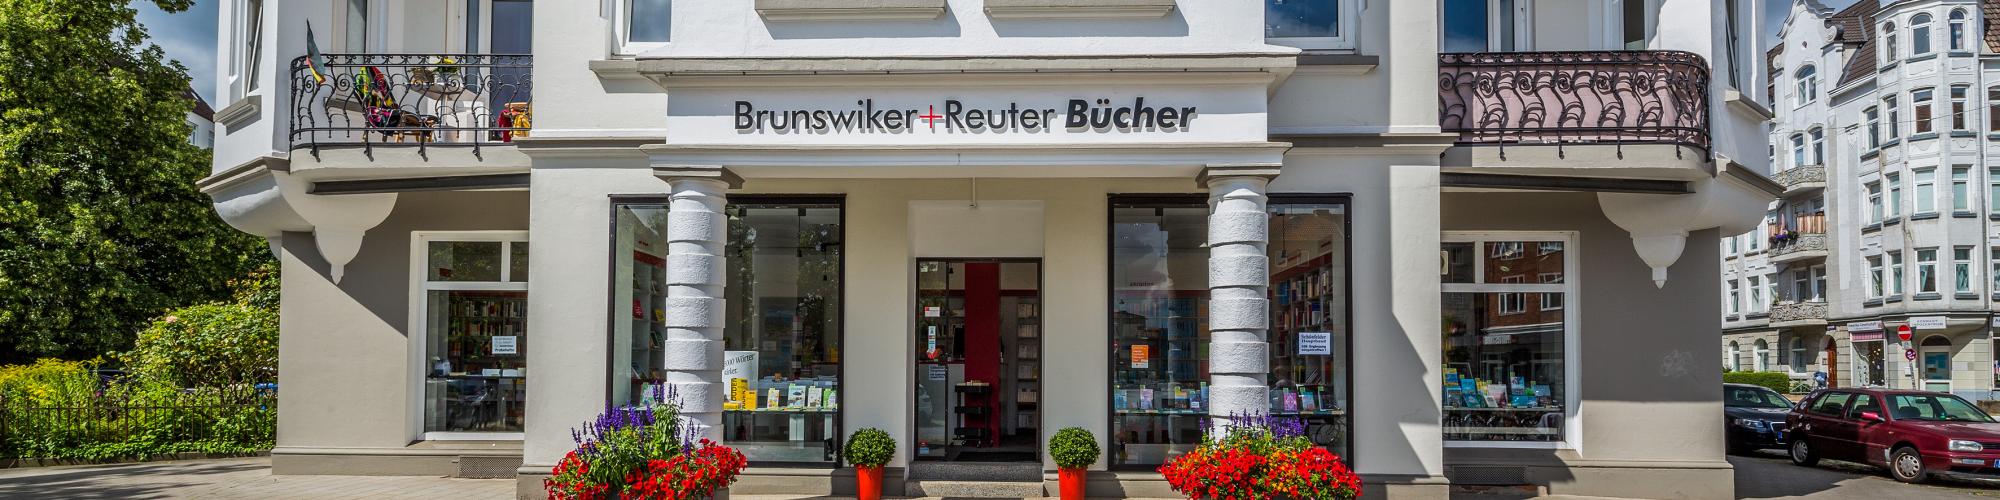 Brunswiker+Reuter Universitätsbuchhandlung GmbH & Co. KG